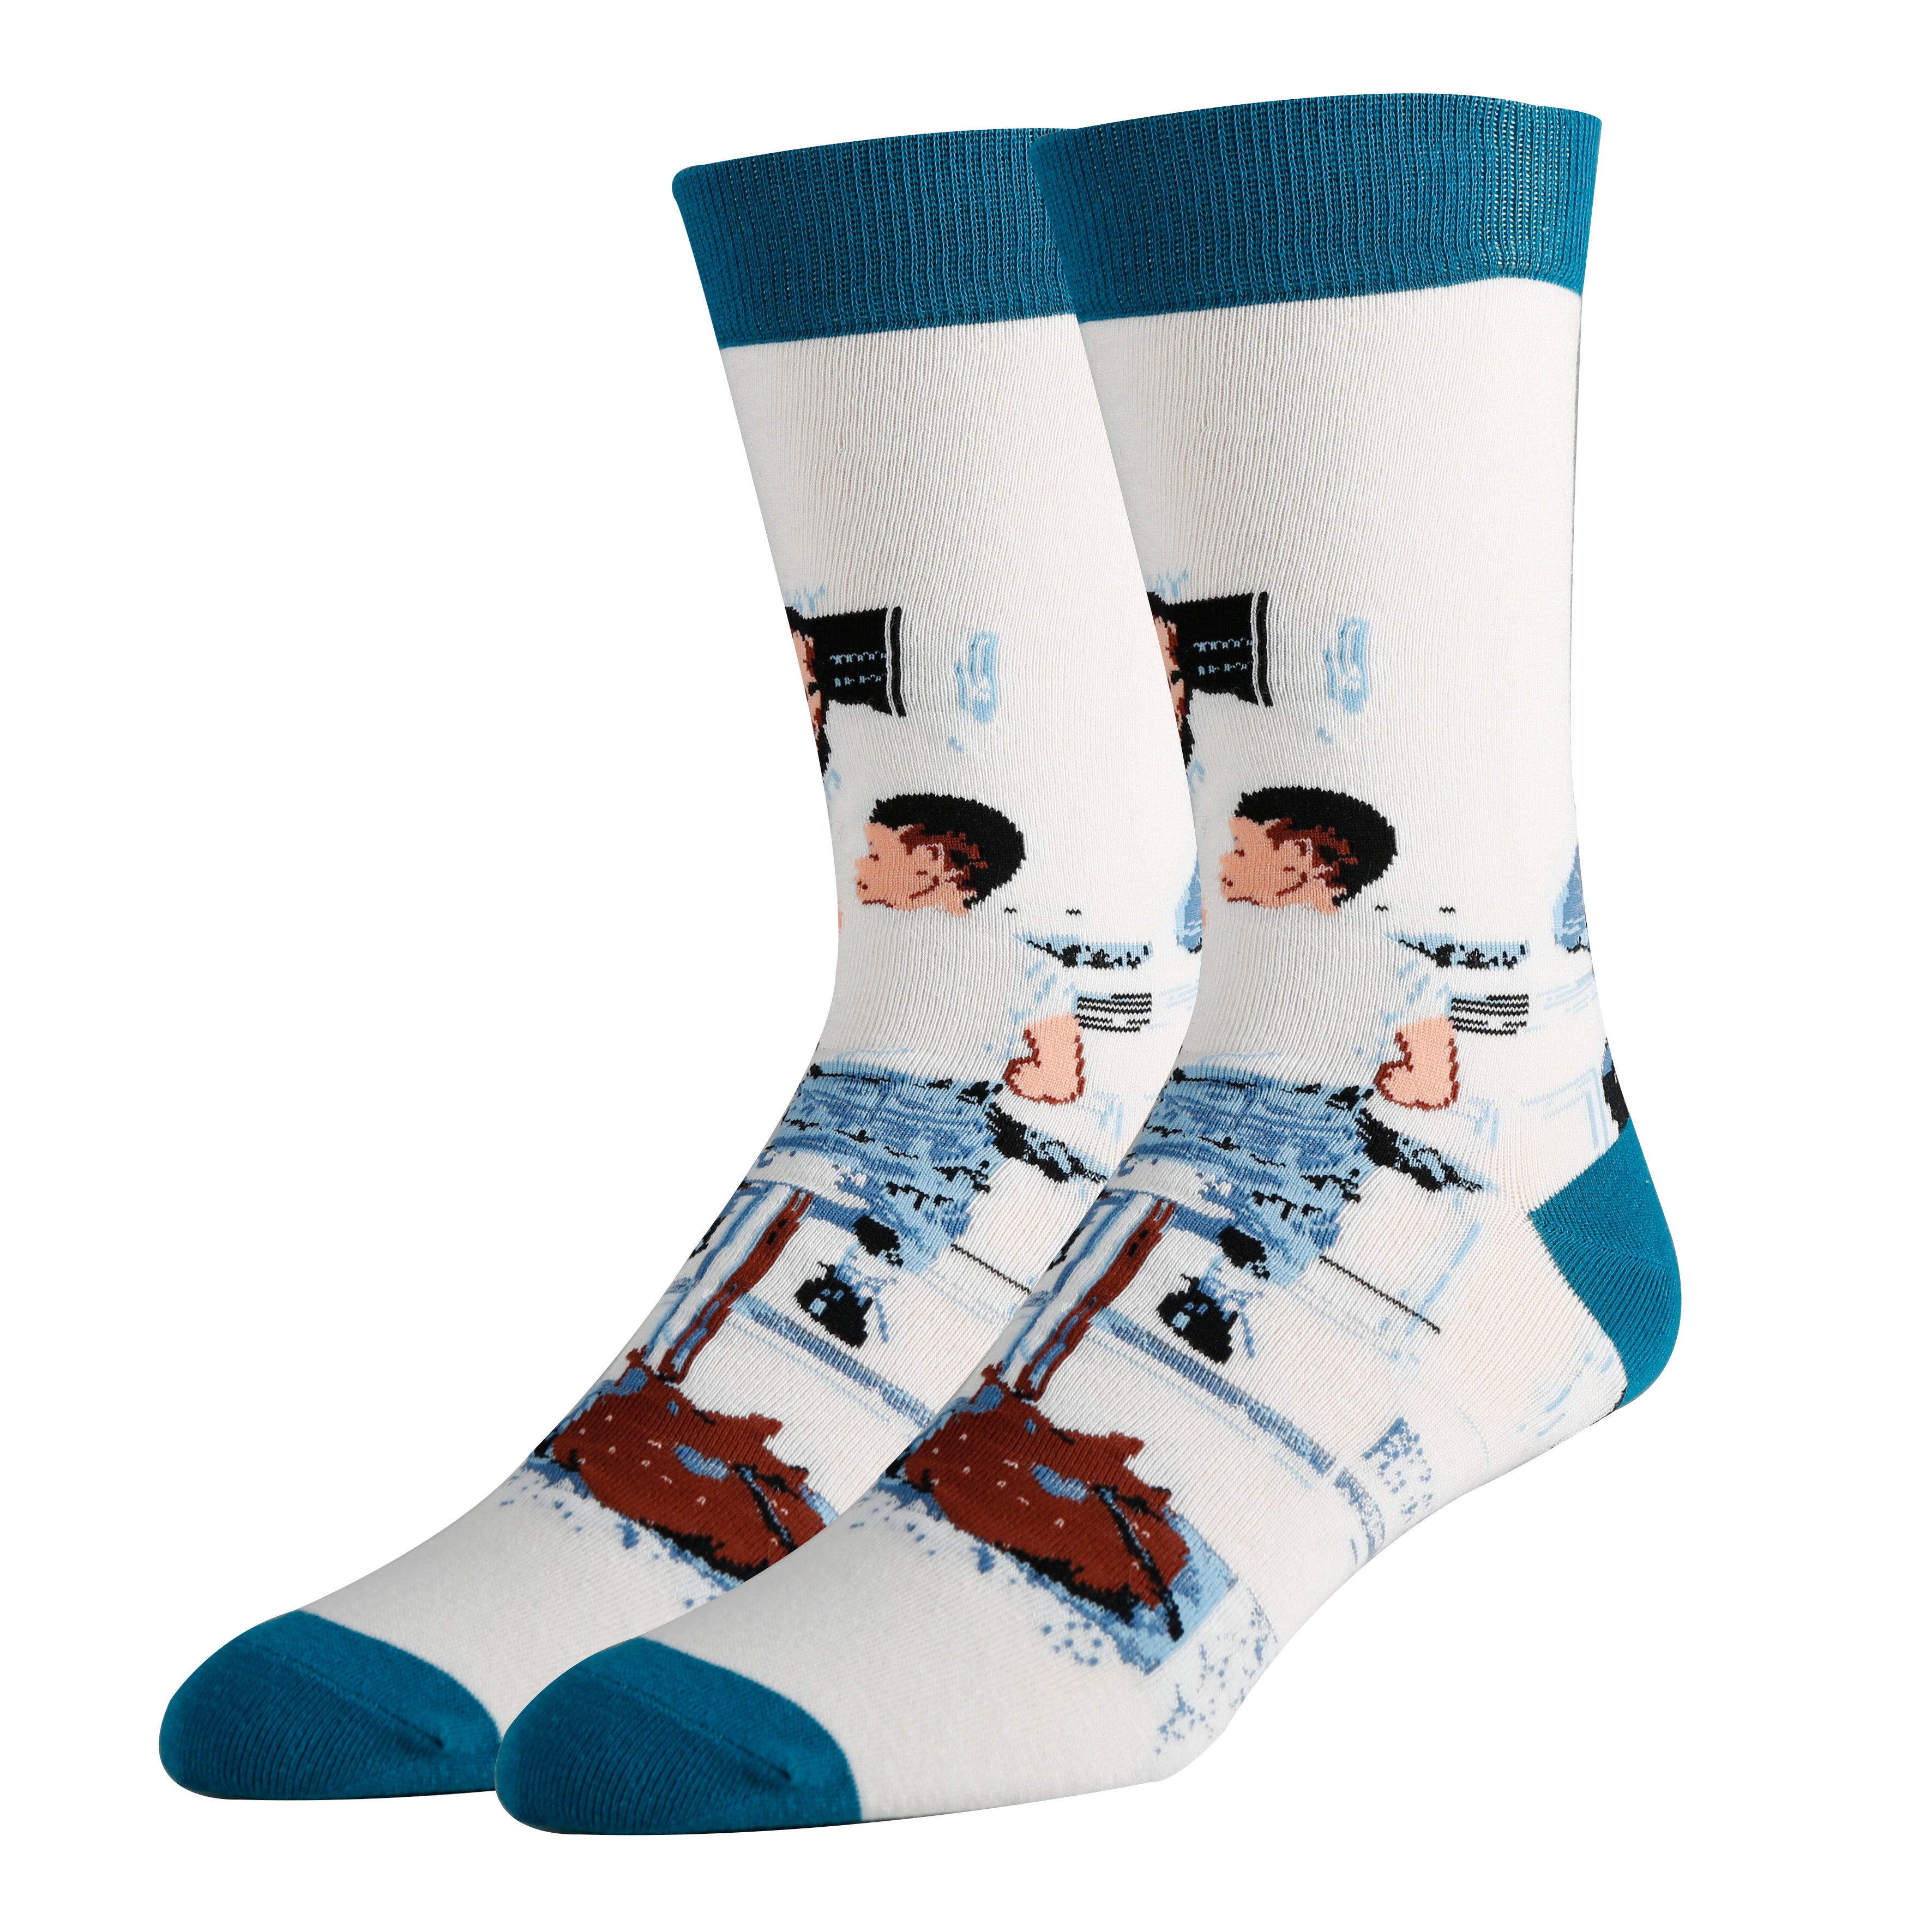 Run Away Socks | Novelty Crew Socks For Men